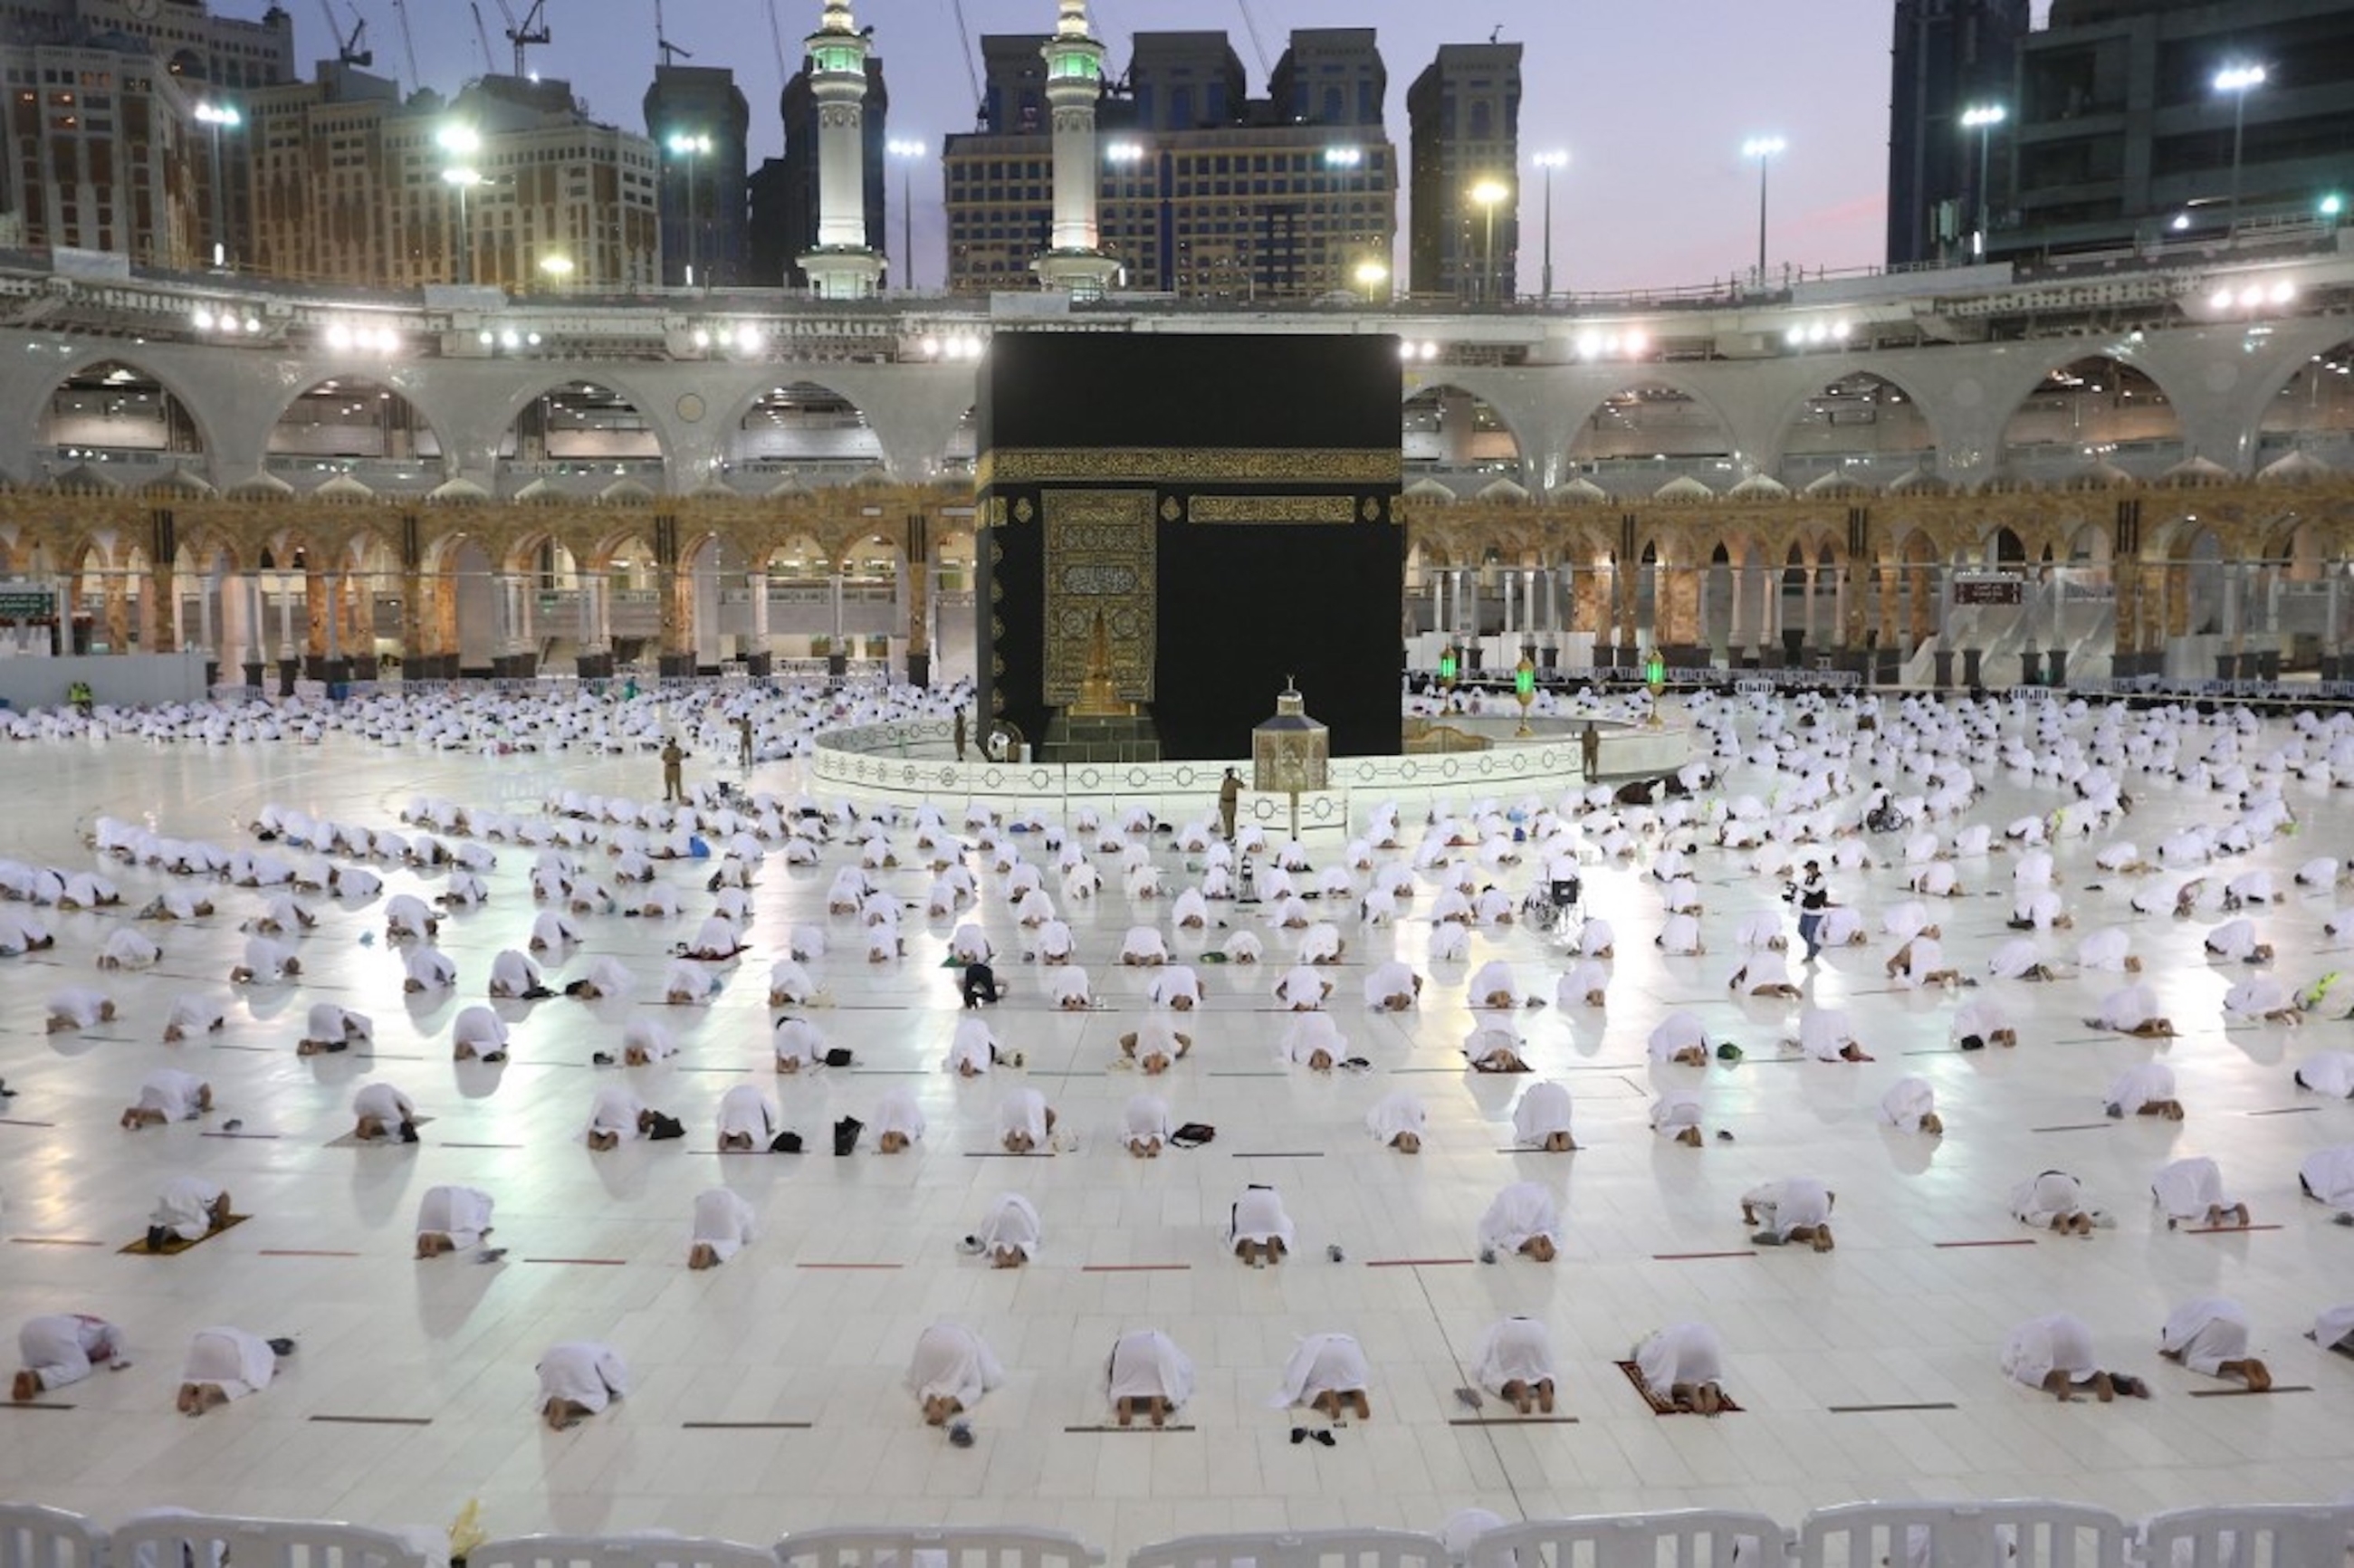 ARABIE SAOUDITE. Les fidèles musulmans prient autour de la Kaaba, le sanctuaire le plus sacré du complexe de la grande mosquée de la ville saoudienne de La Mecque, le 13 avril 2021 (AFP)